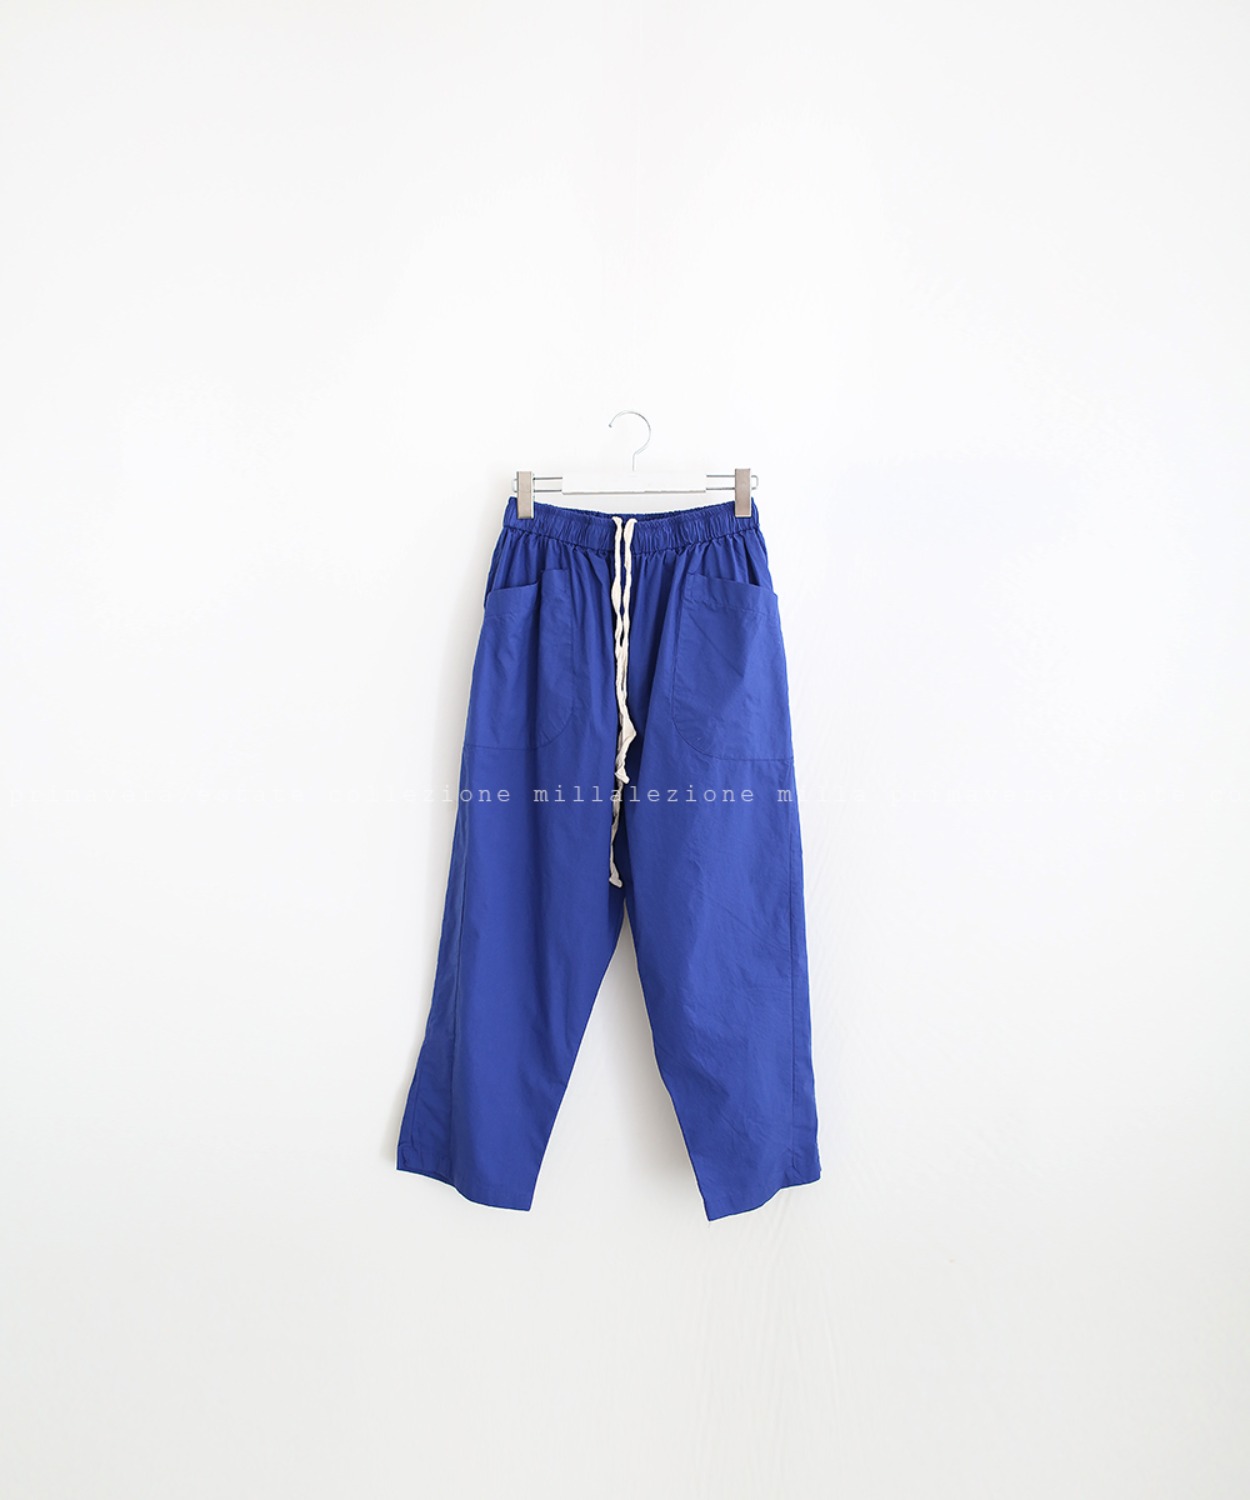 N°016 pants